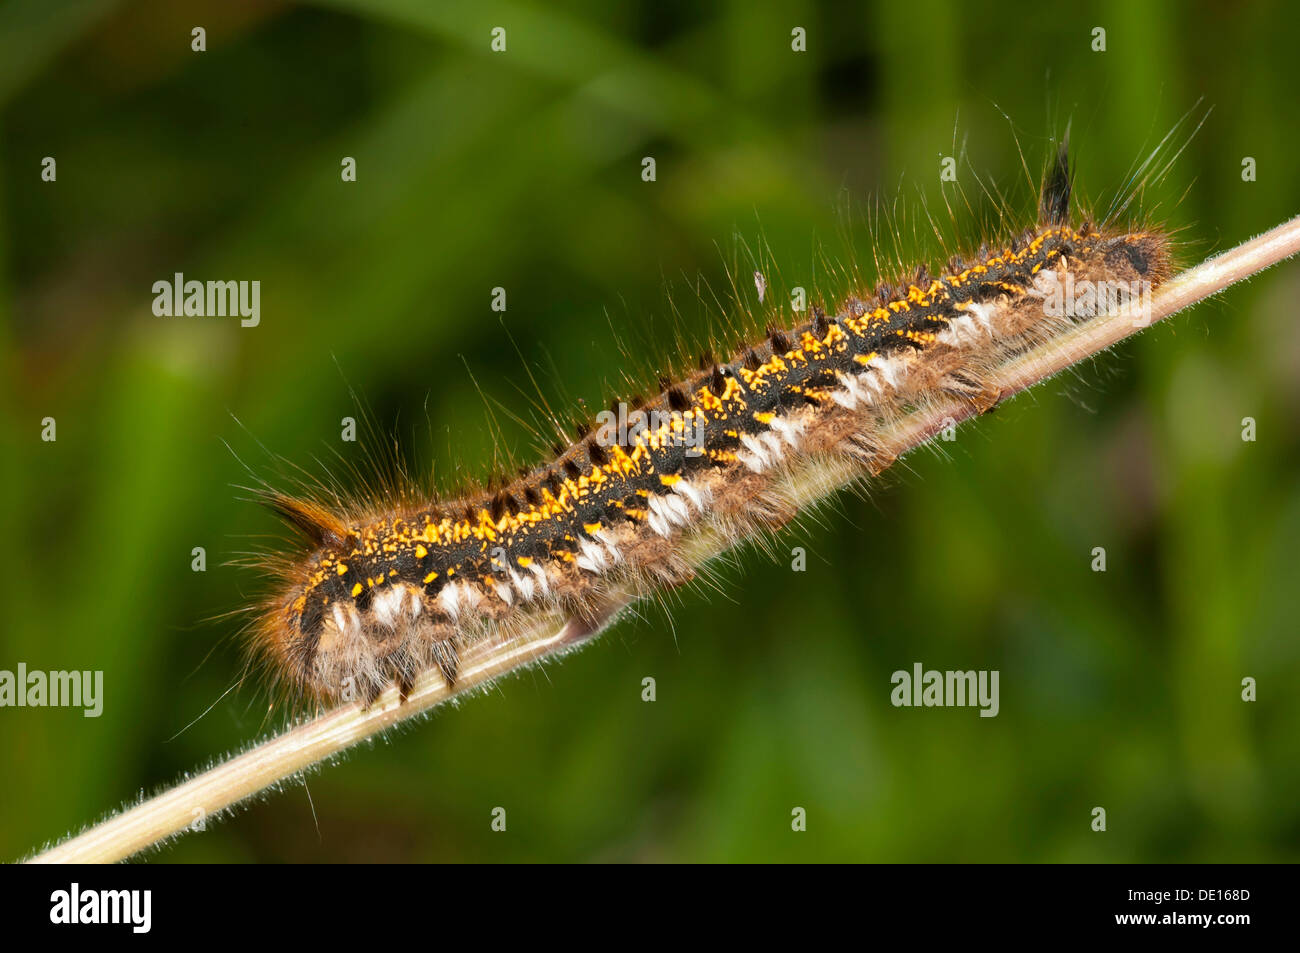 Le Buveur de Caterpillar (Euthrix potatoria), réserve naturelle, Mönchbruch Mörfelden, Hesse, Allemagne Banque D'Images